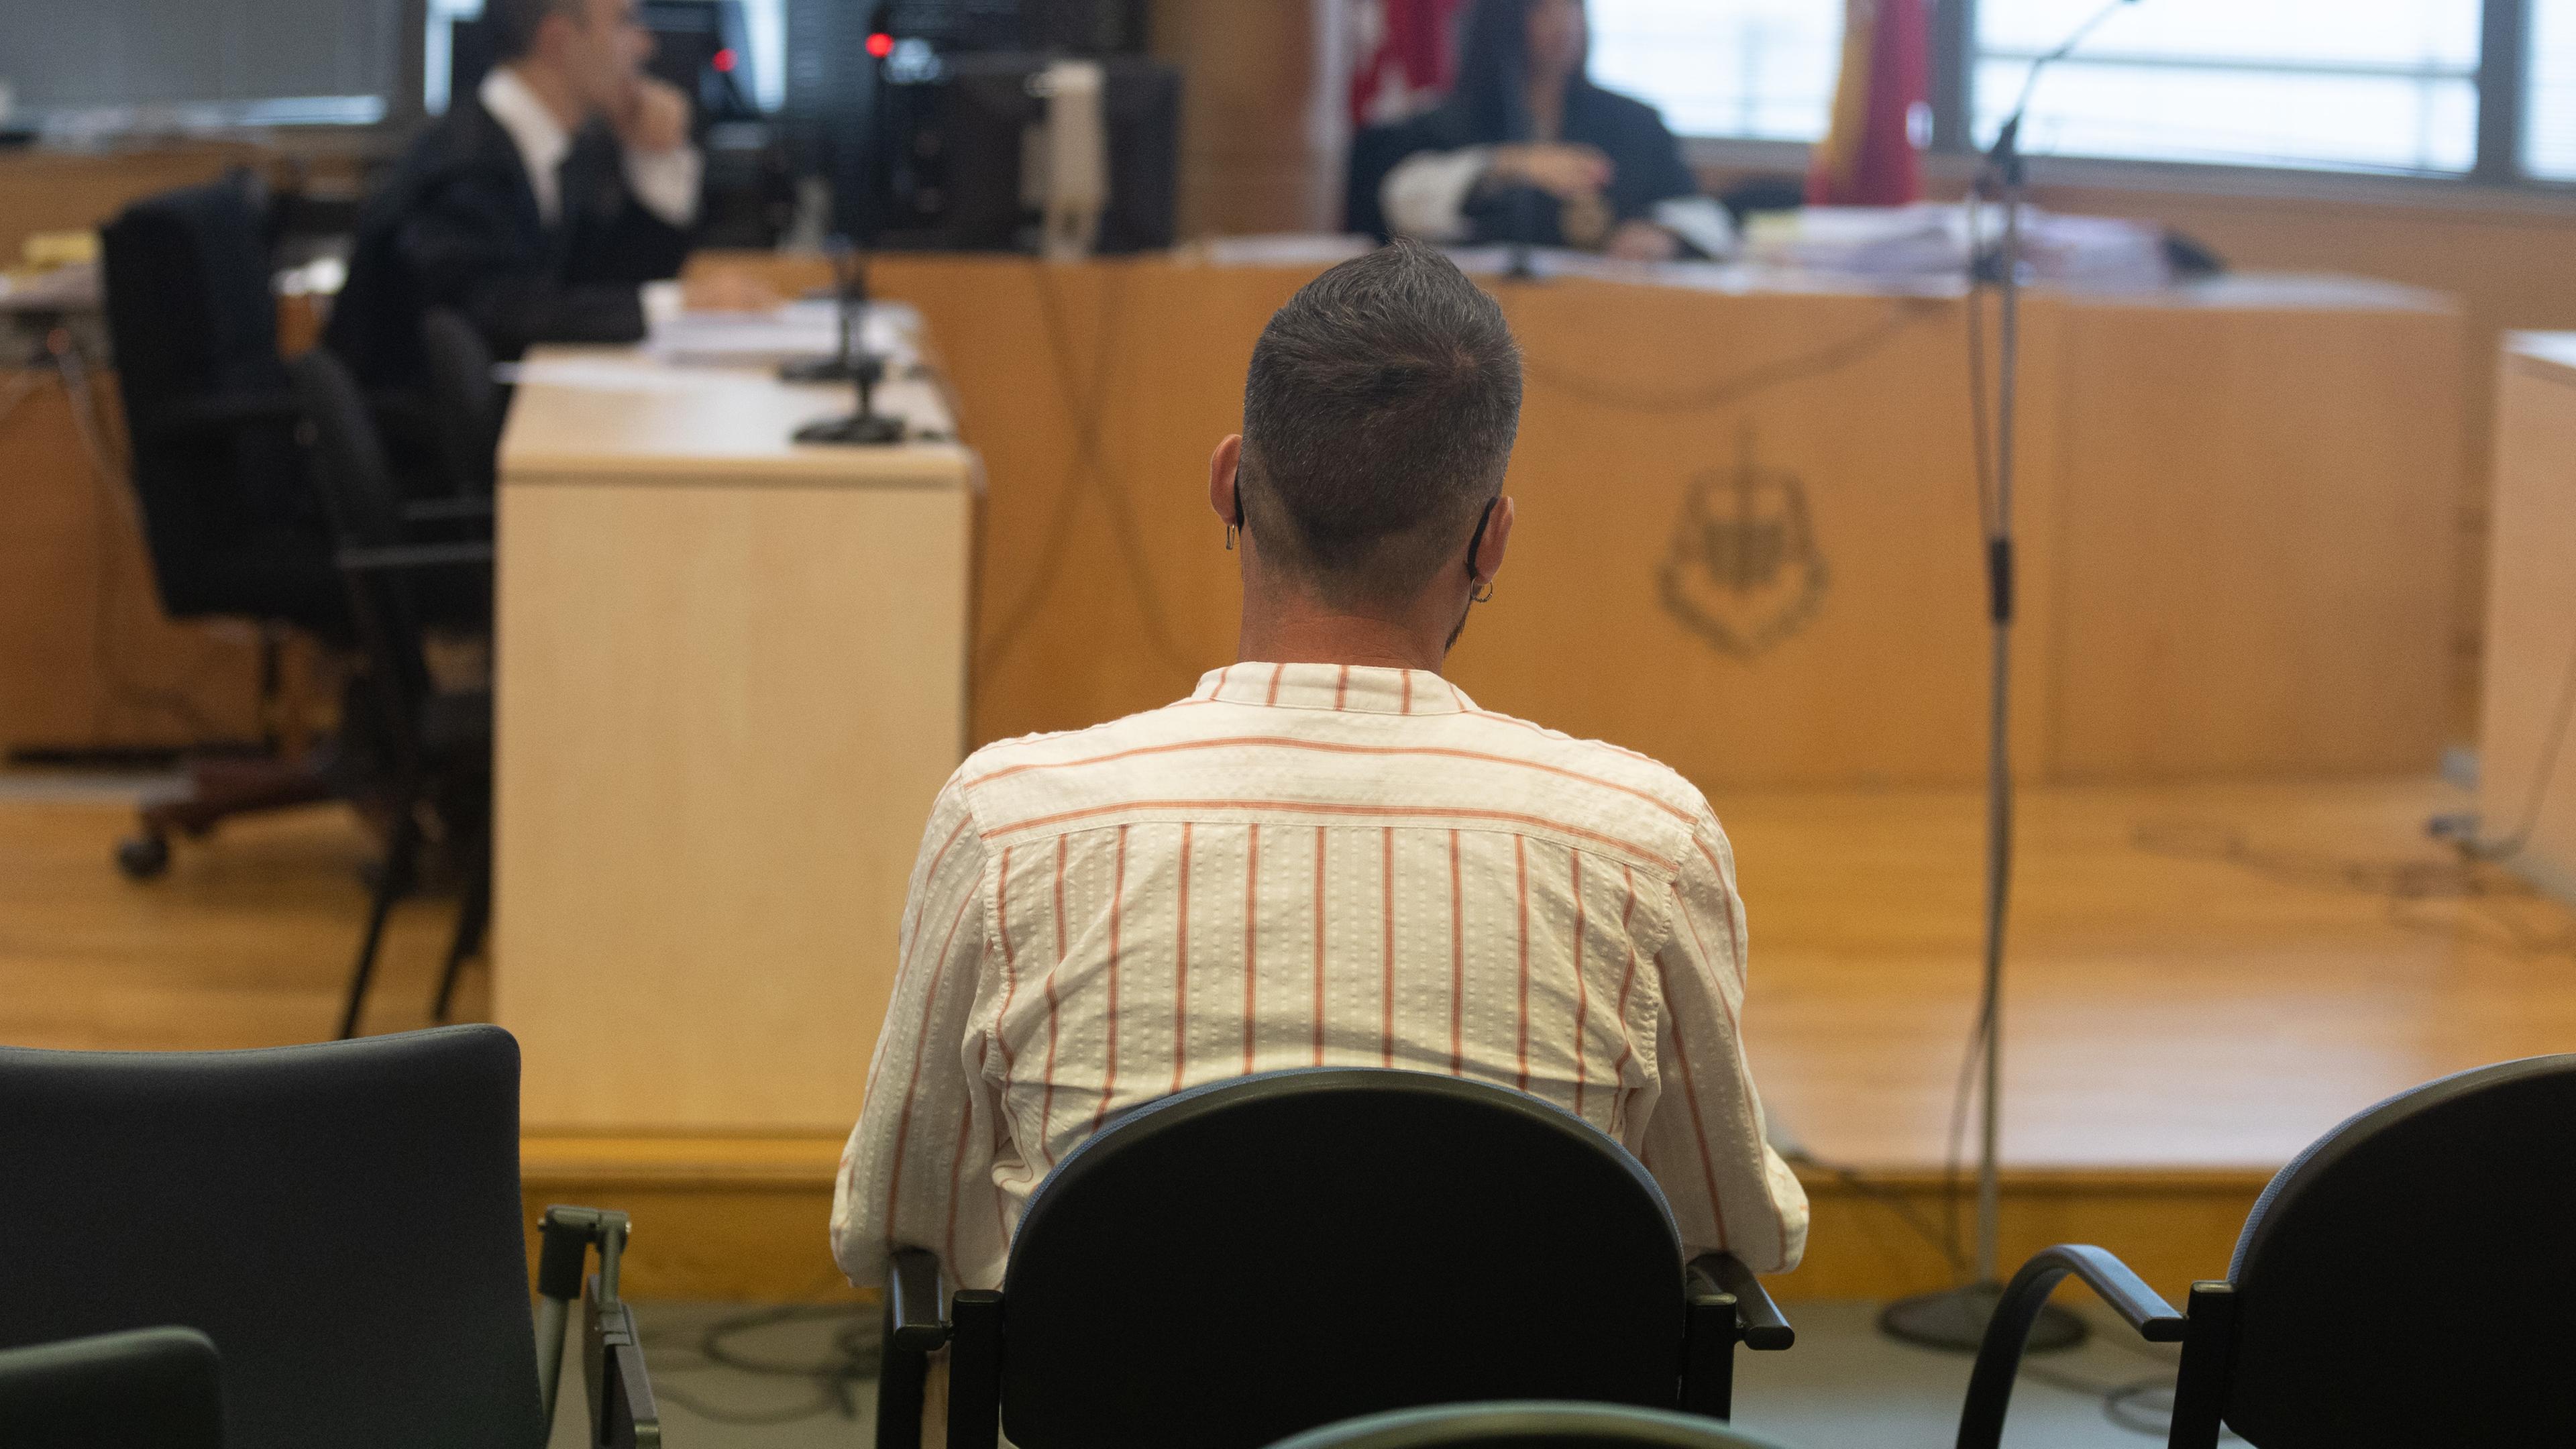 Spanien, Madrid: Ein ehemaliger Teilnehmer der TV-Reality-Sendung "Big Brother" sitzt auf der Anklagebank in einem Gerichtssaal.